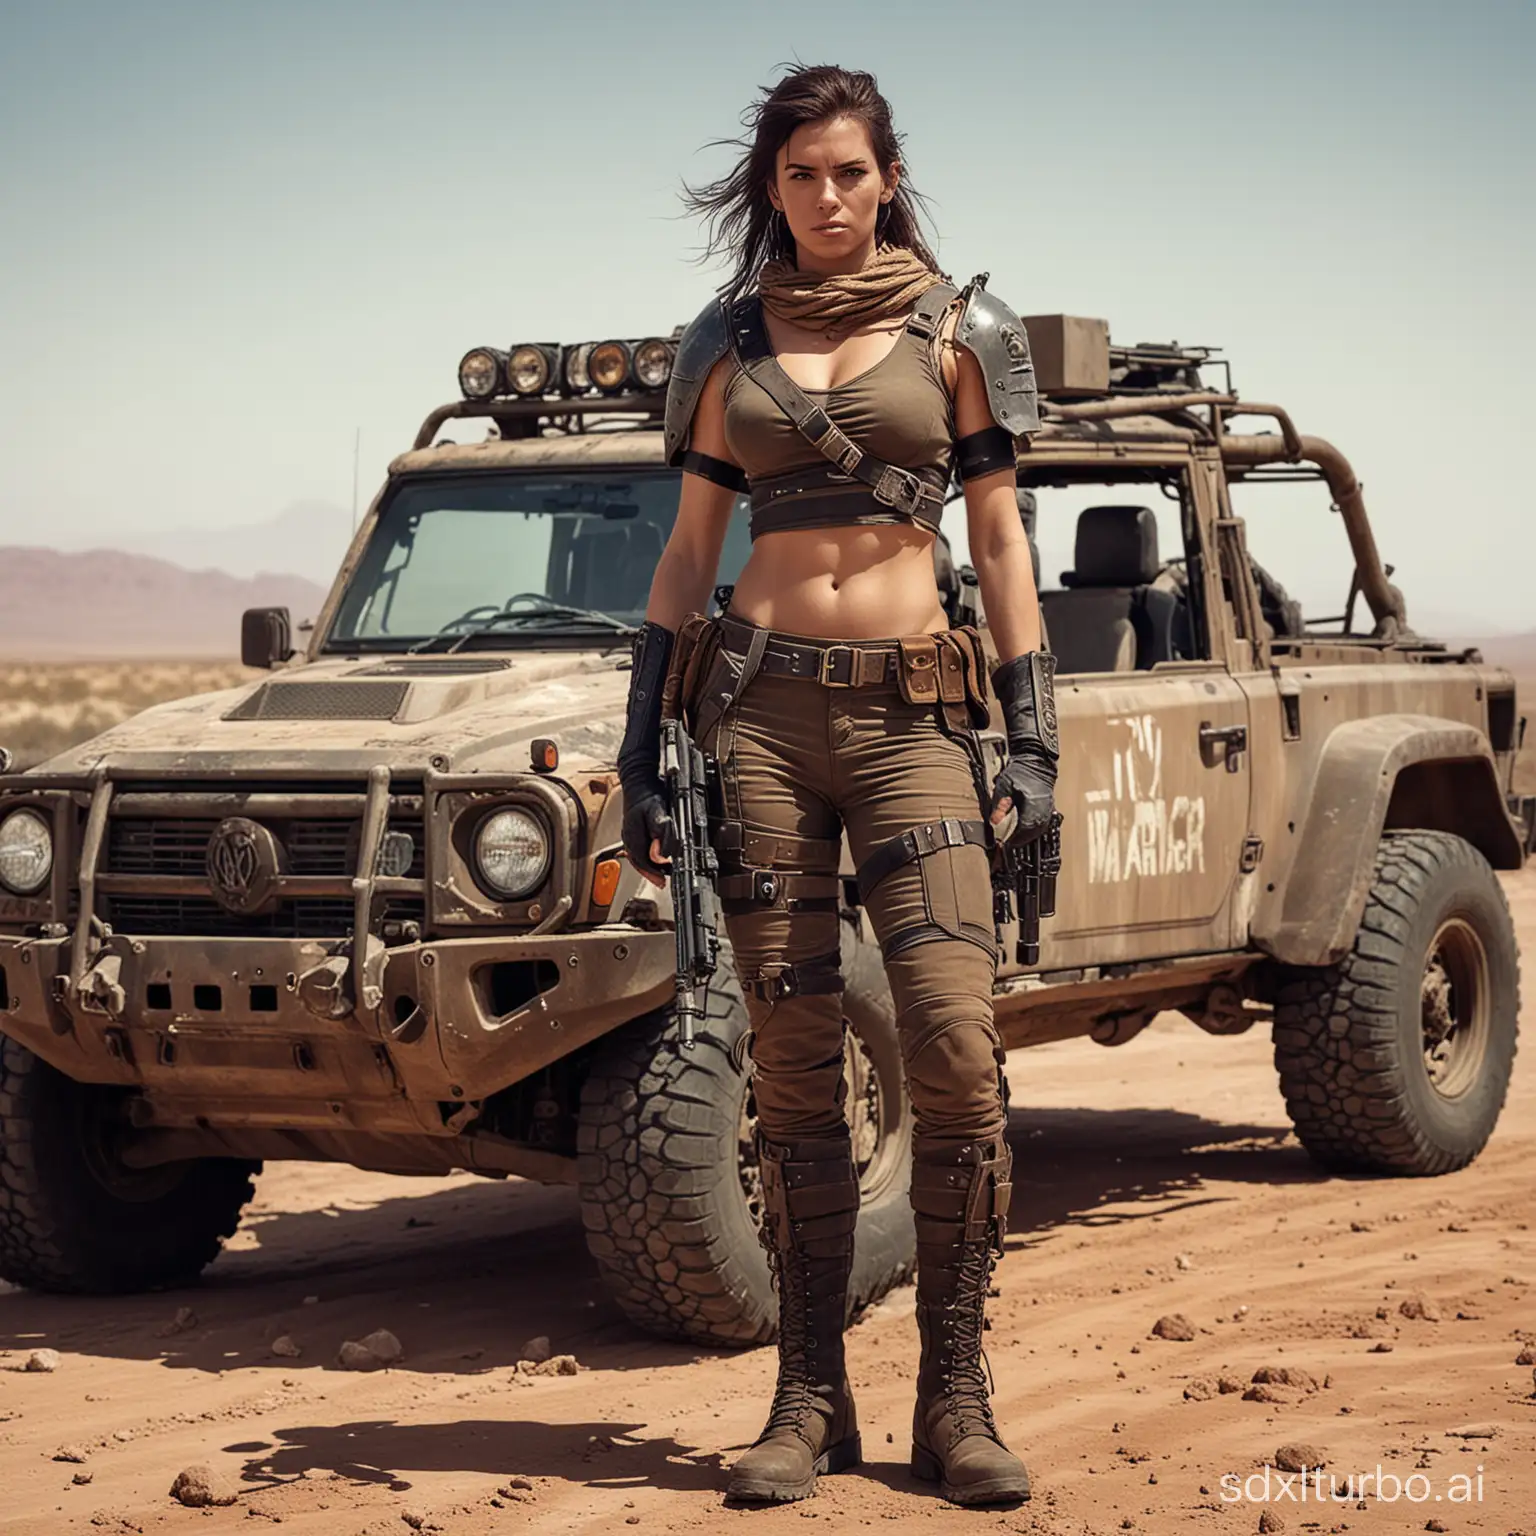 Desert-Female-Warrior-with-OffRoad-Vehicle-Wasteland-Badass